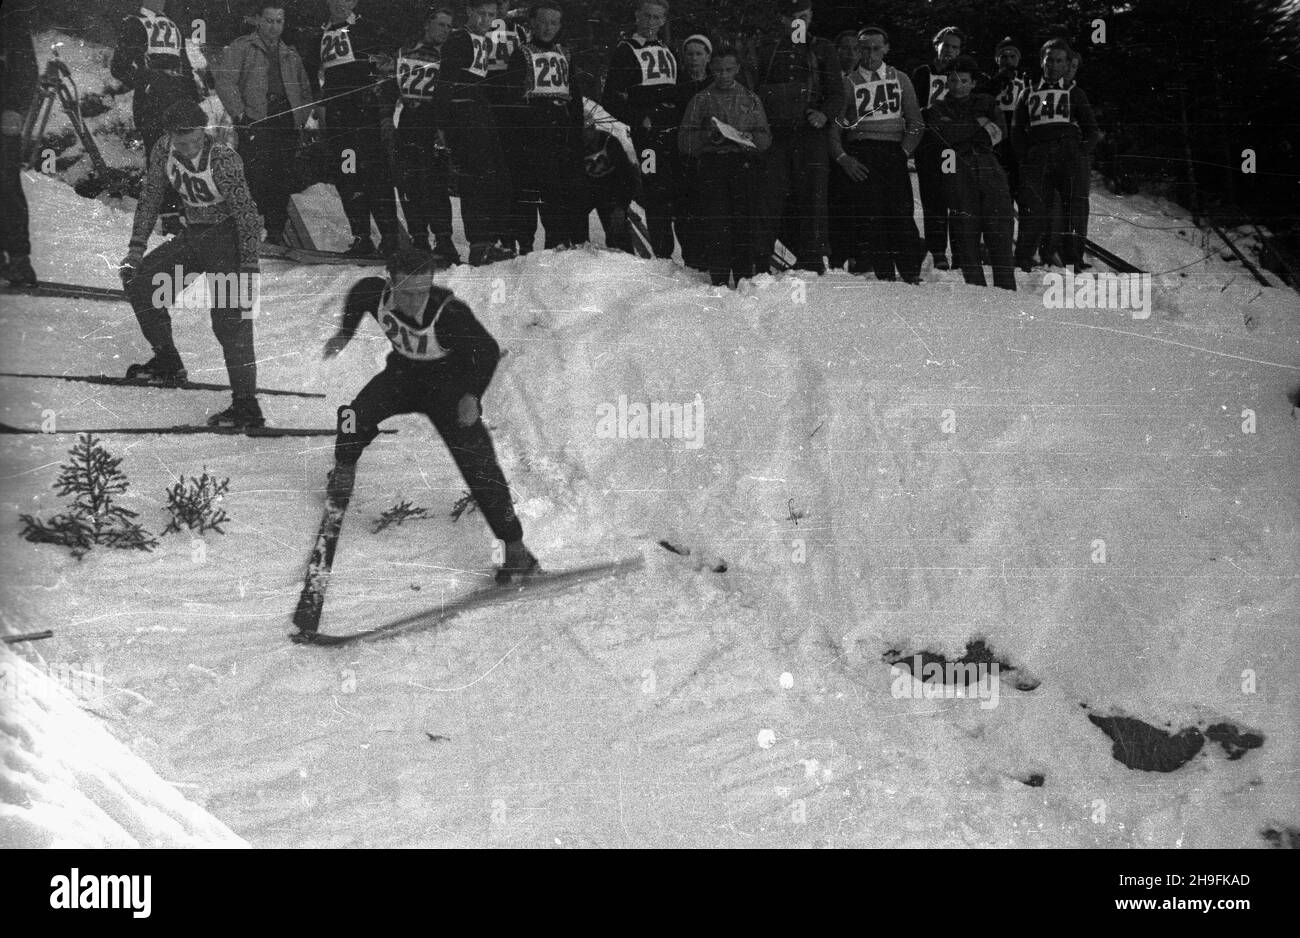 Karpacz, 1948-02-22. W dniach 19-23 lutego odbywa³y siê XXIII Mistrzostwa Narciarskie Polski. Zawody w skokach narciarskich rozegrano na skoczni Orlinek. Wygra³ je Stanis³aw Marusarz. Nz. jeden ze skoczków na rozbiegu skoczni Orlinek. pw  PAP    Karpacz, Feb. 22, 1948. The 23rd Poland's Skiing Championship was held on February 19-23. Stanislaw Marusarz won a ski jumping competition which was held at the Orlinek ski jump. Pictured: a jumper on the inrun of the Orlinek ski jump.  pw  PAP Stock Photo